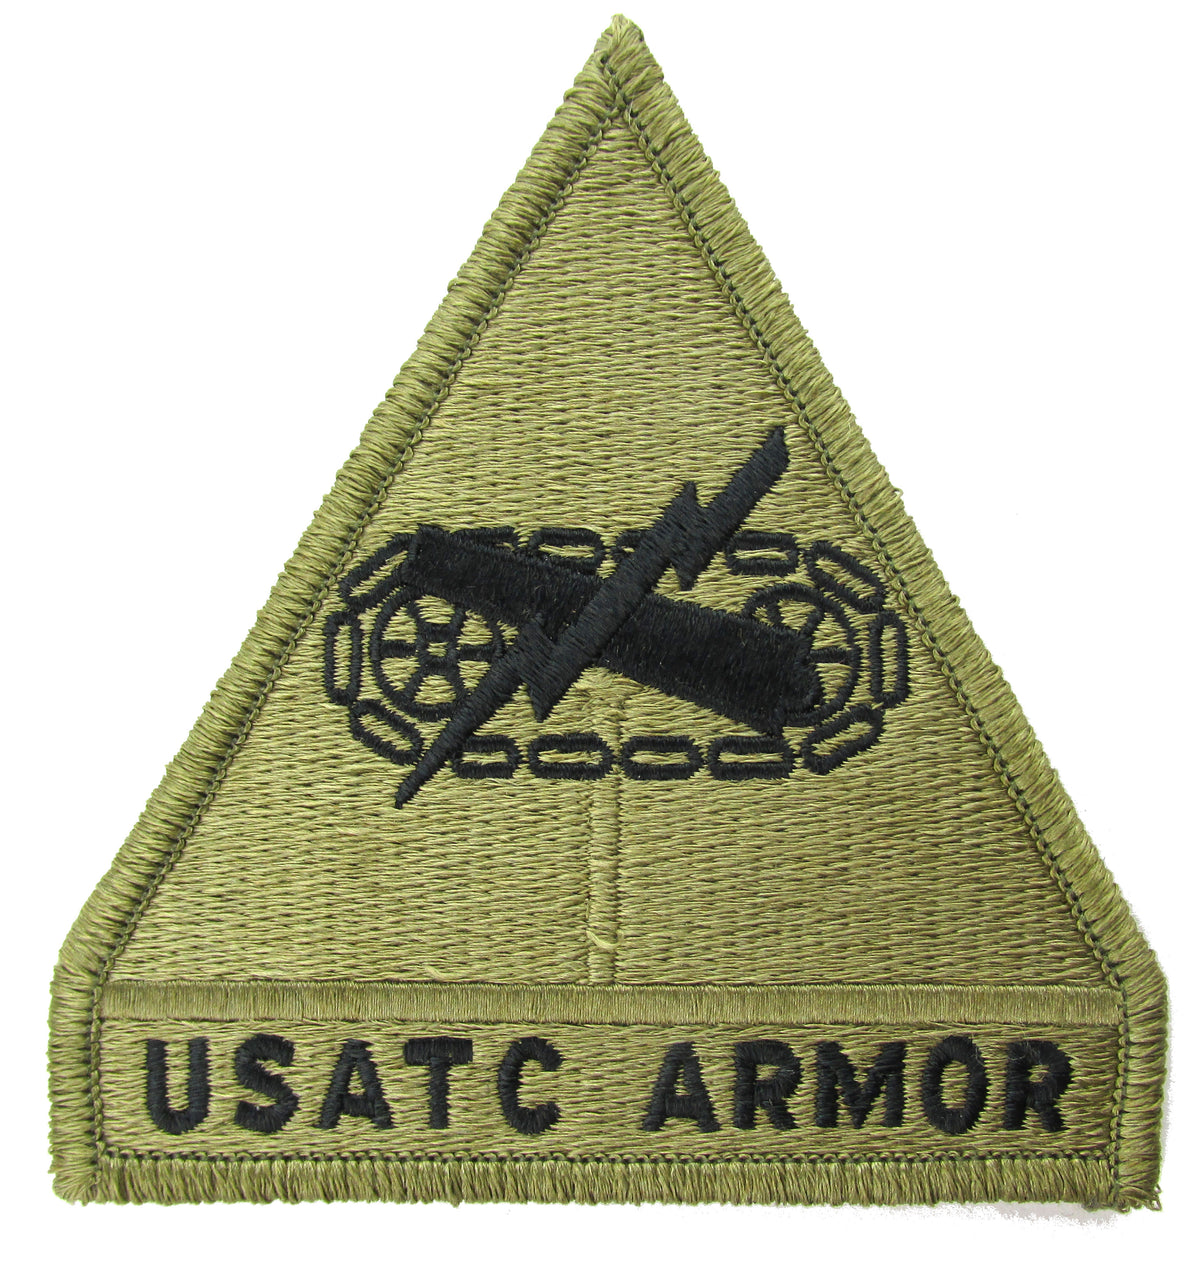 USATC Army Training Center Army OCP Patch - Army Scorpion W2